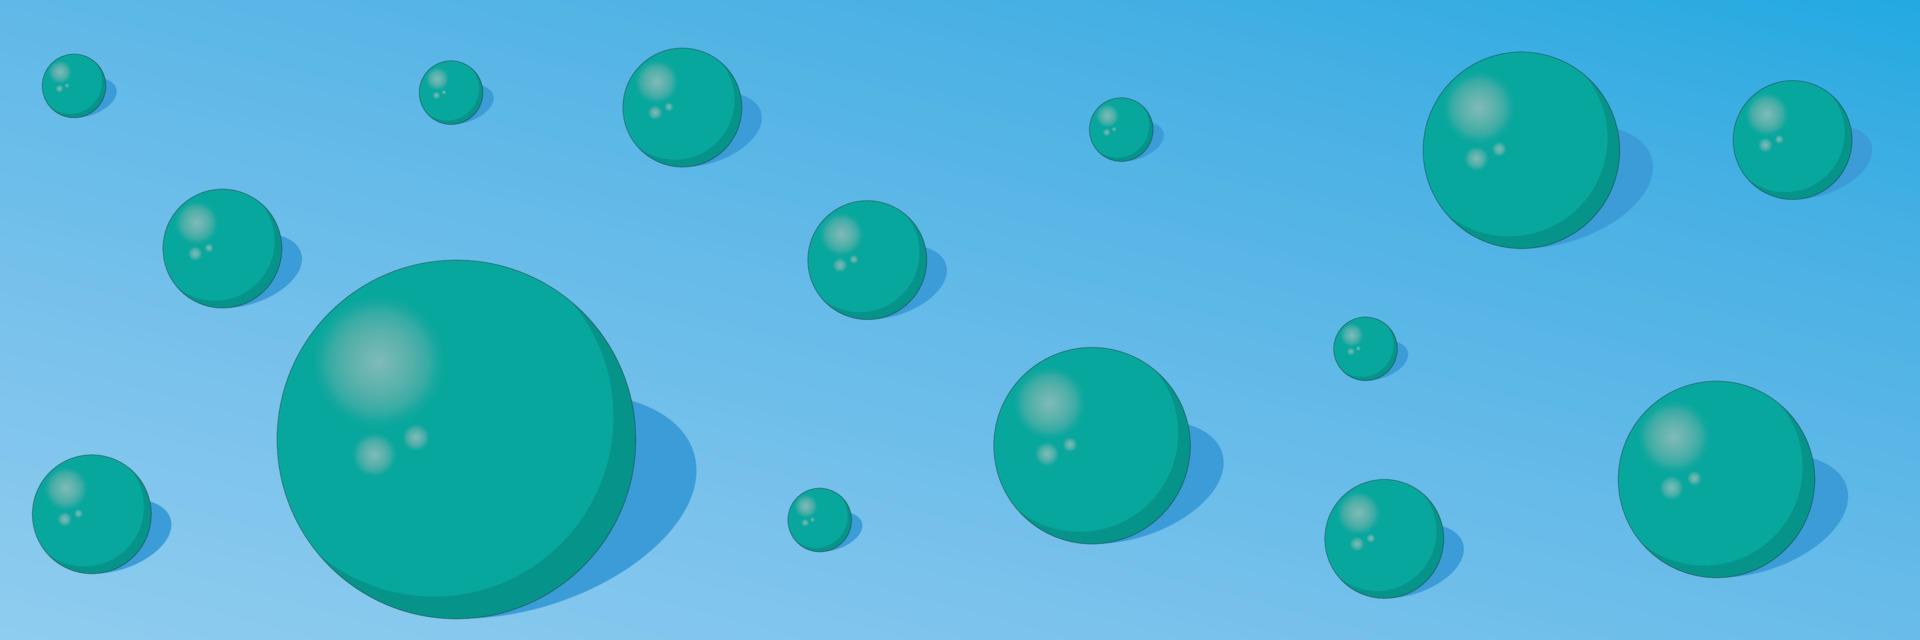 abstracte achtergrond met turquoise ballen op blauwe kleur achtergrond vectorillustratie vector